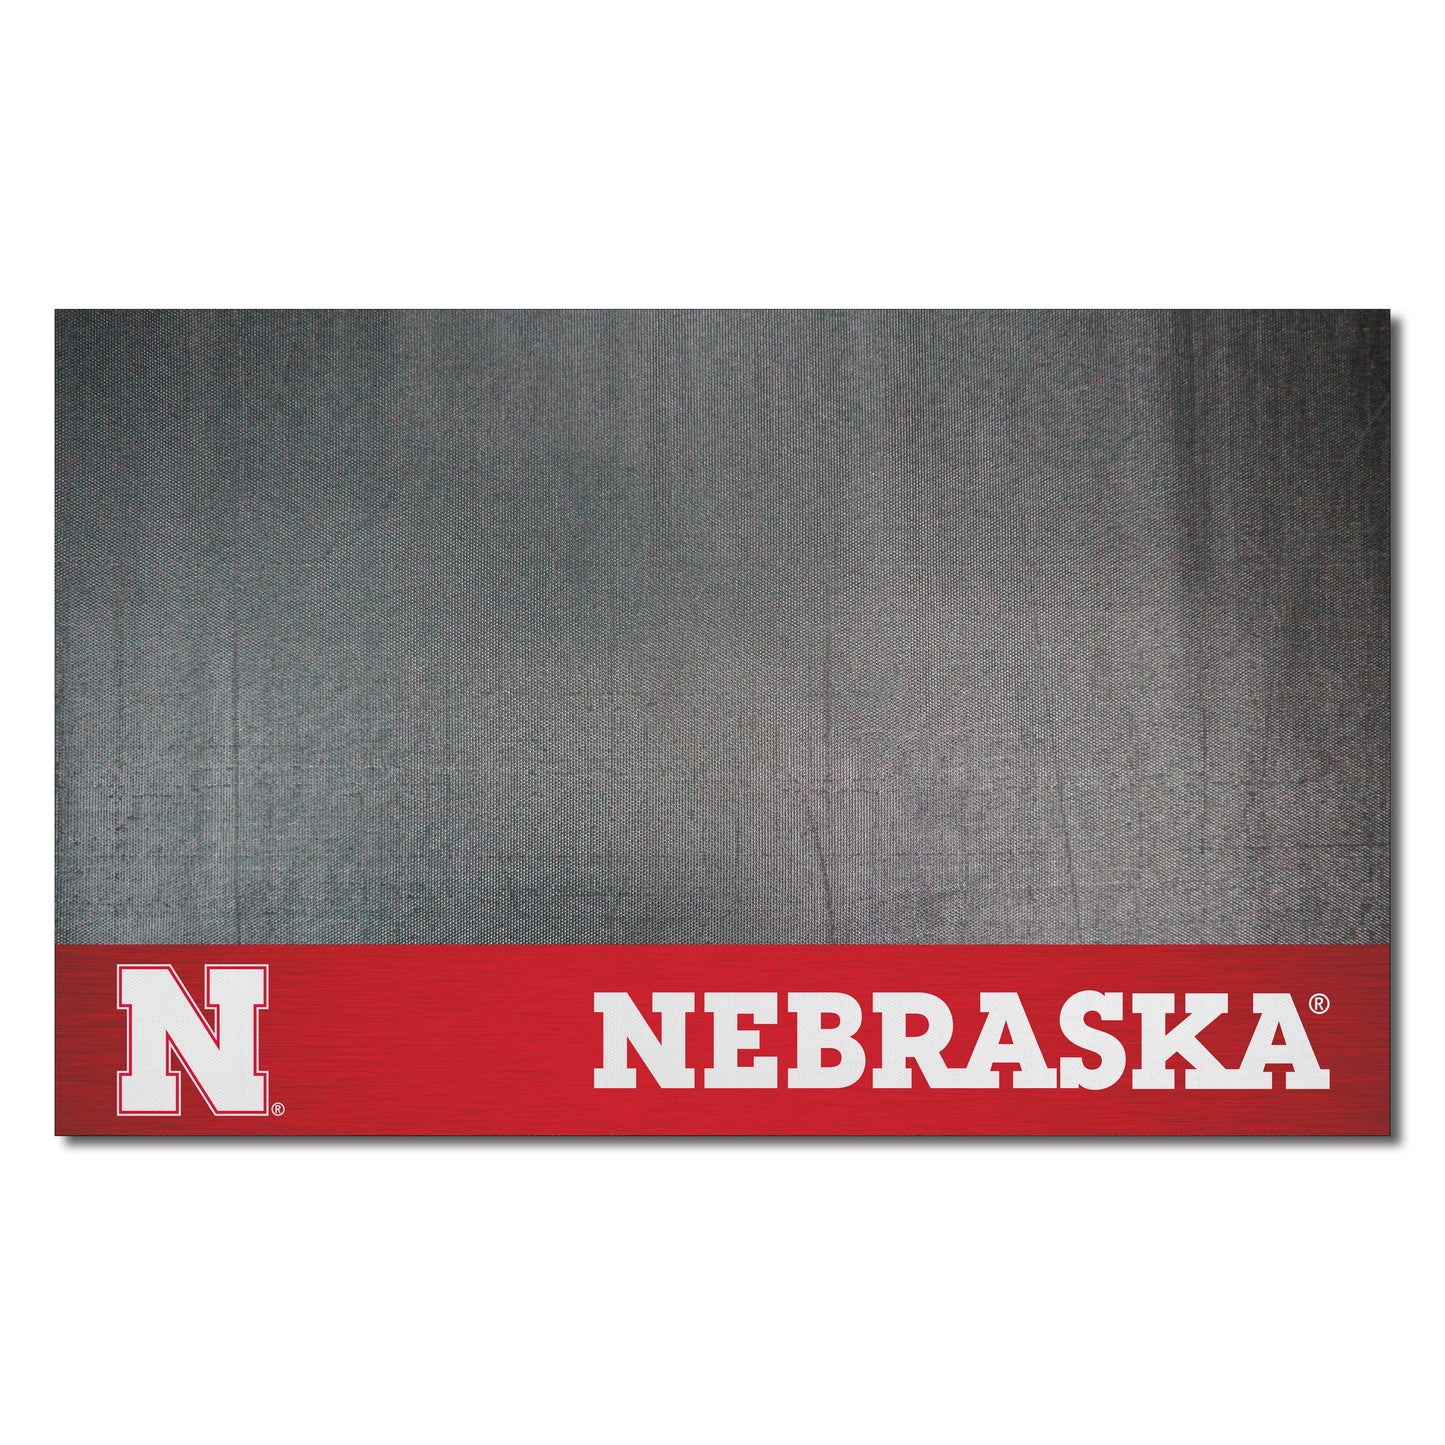 Nebraska Cornhuskers Vinyl Grill Mat - 26in. x 42in. - N Primary Logo, Red